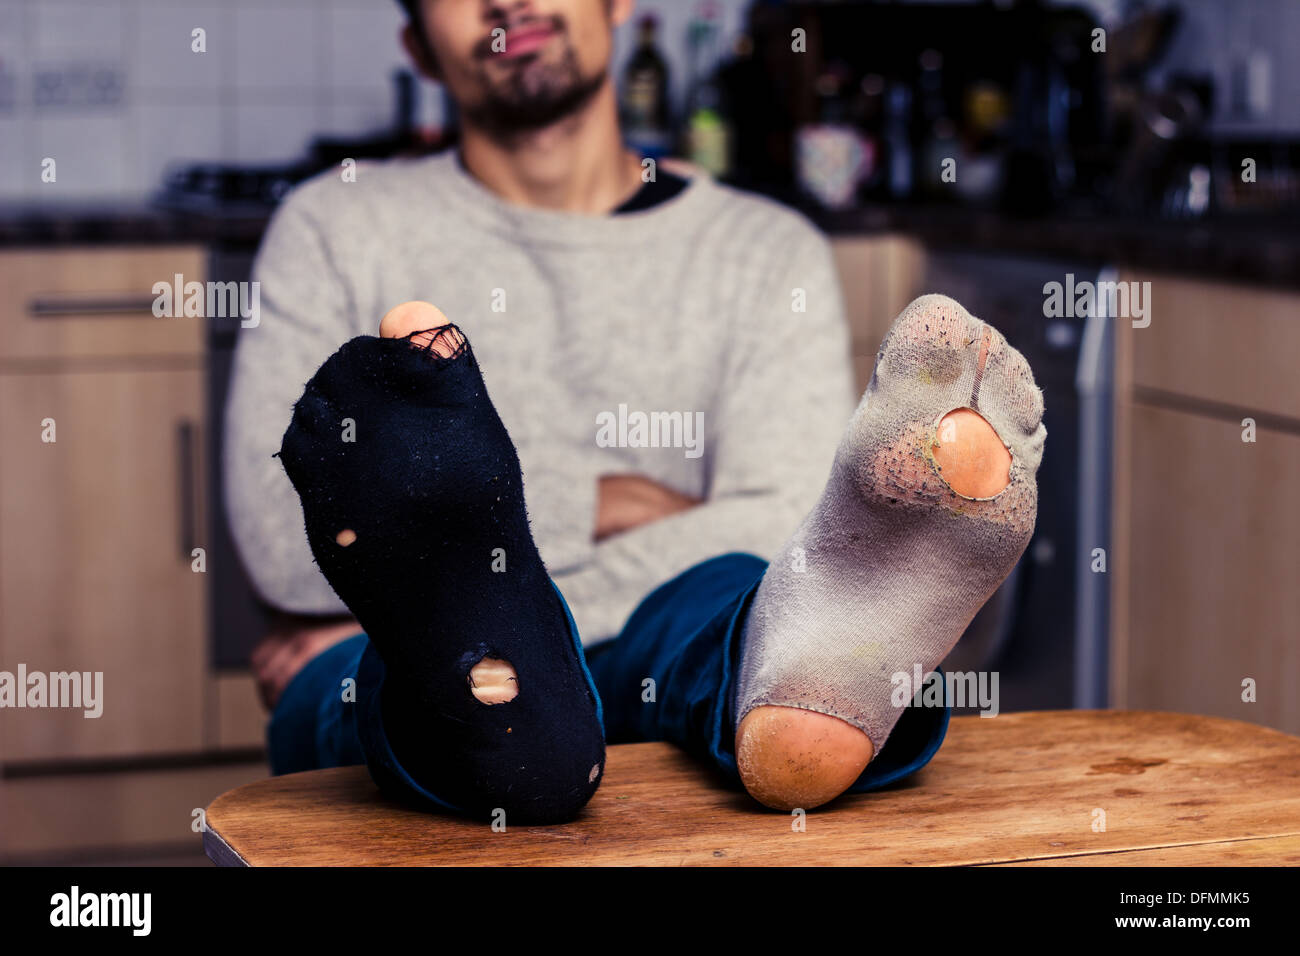 Junger Mann mit getragenen Socken am Tisch Stockfotografie - Alamy